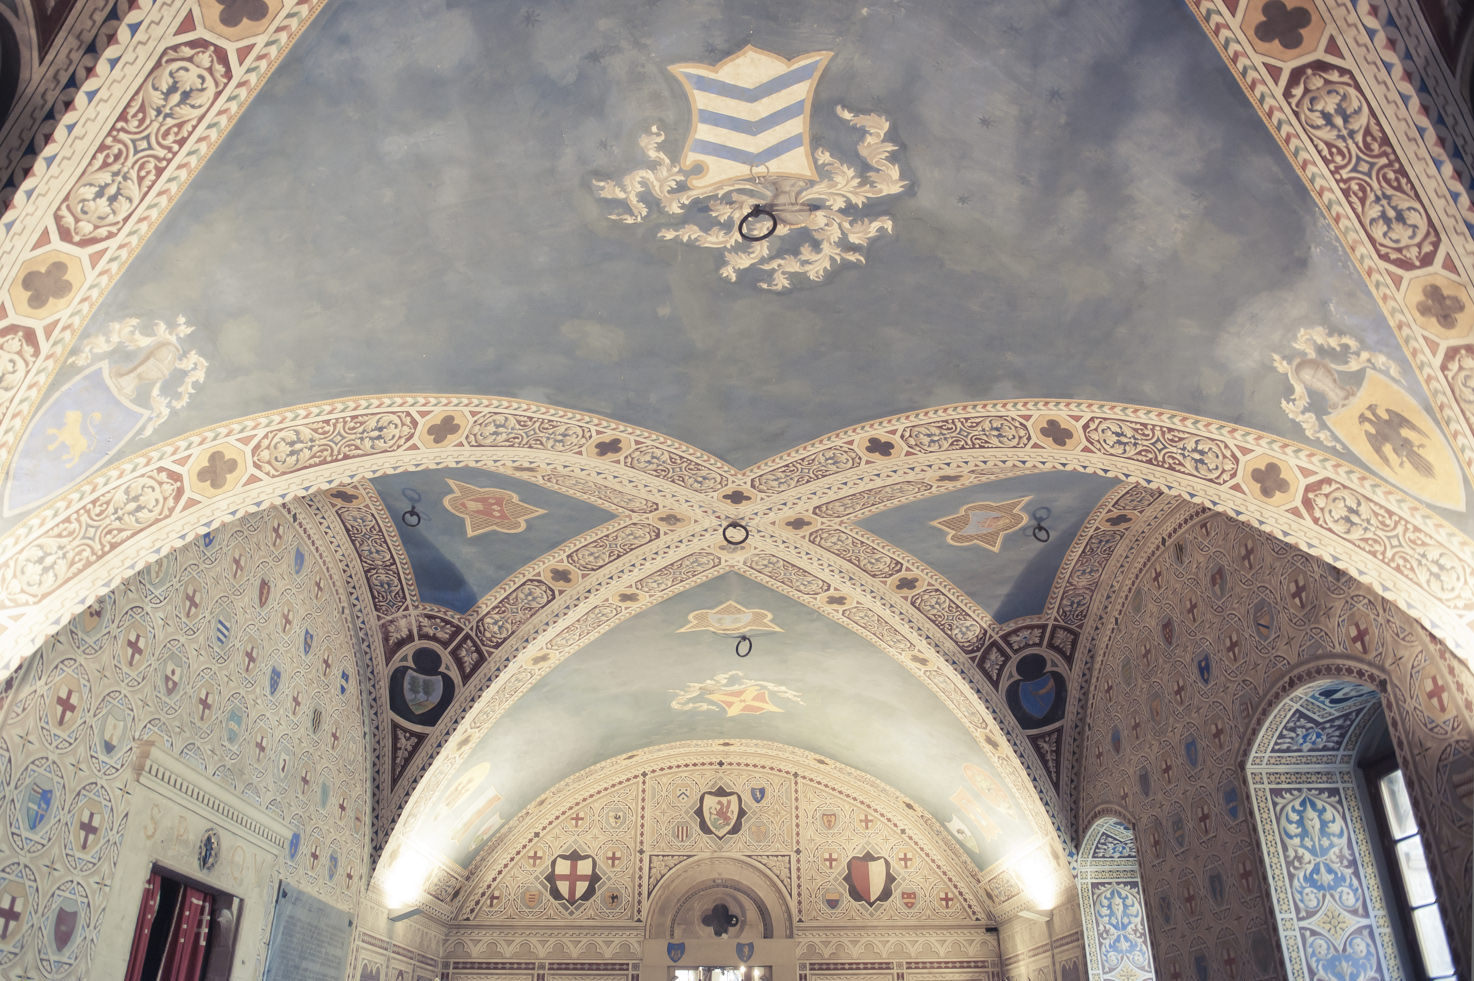 Frescoed ceiling of Palazzo dei Priori